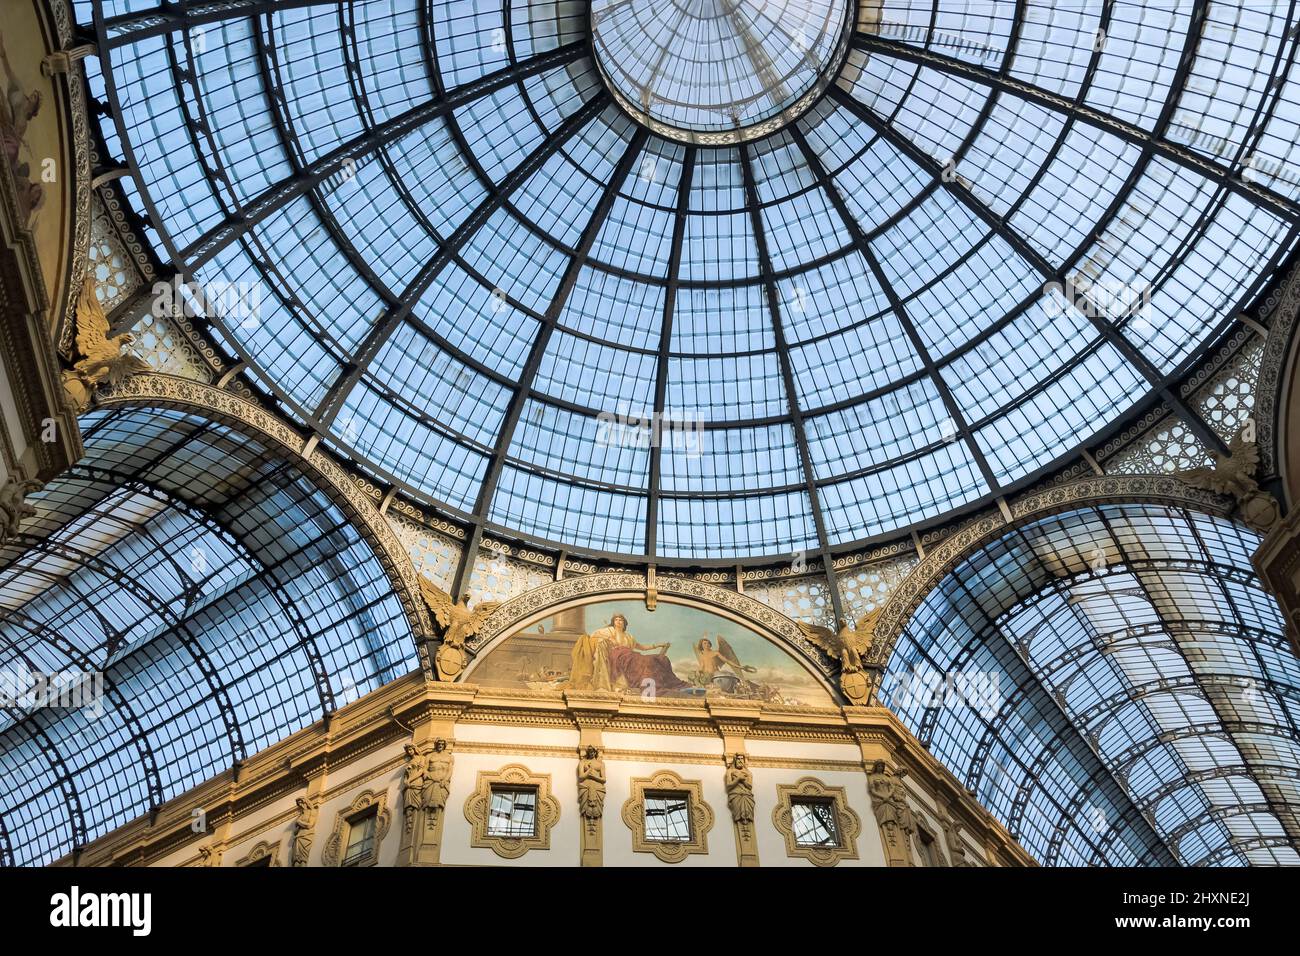 Dettaglio architettonico della Galleria Vittorio Emanuele II nella città di Milano, la più antica galleria commerciale attiva d'Italia e un importante punto di riferimento Foto Stock